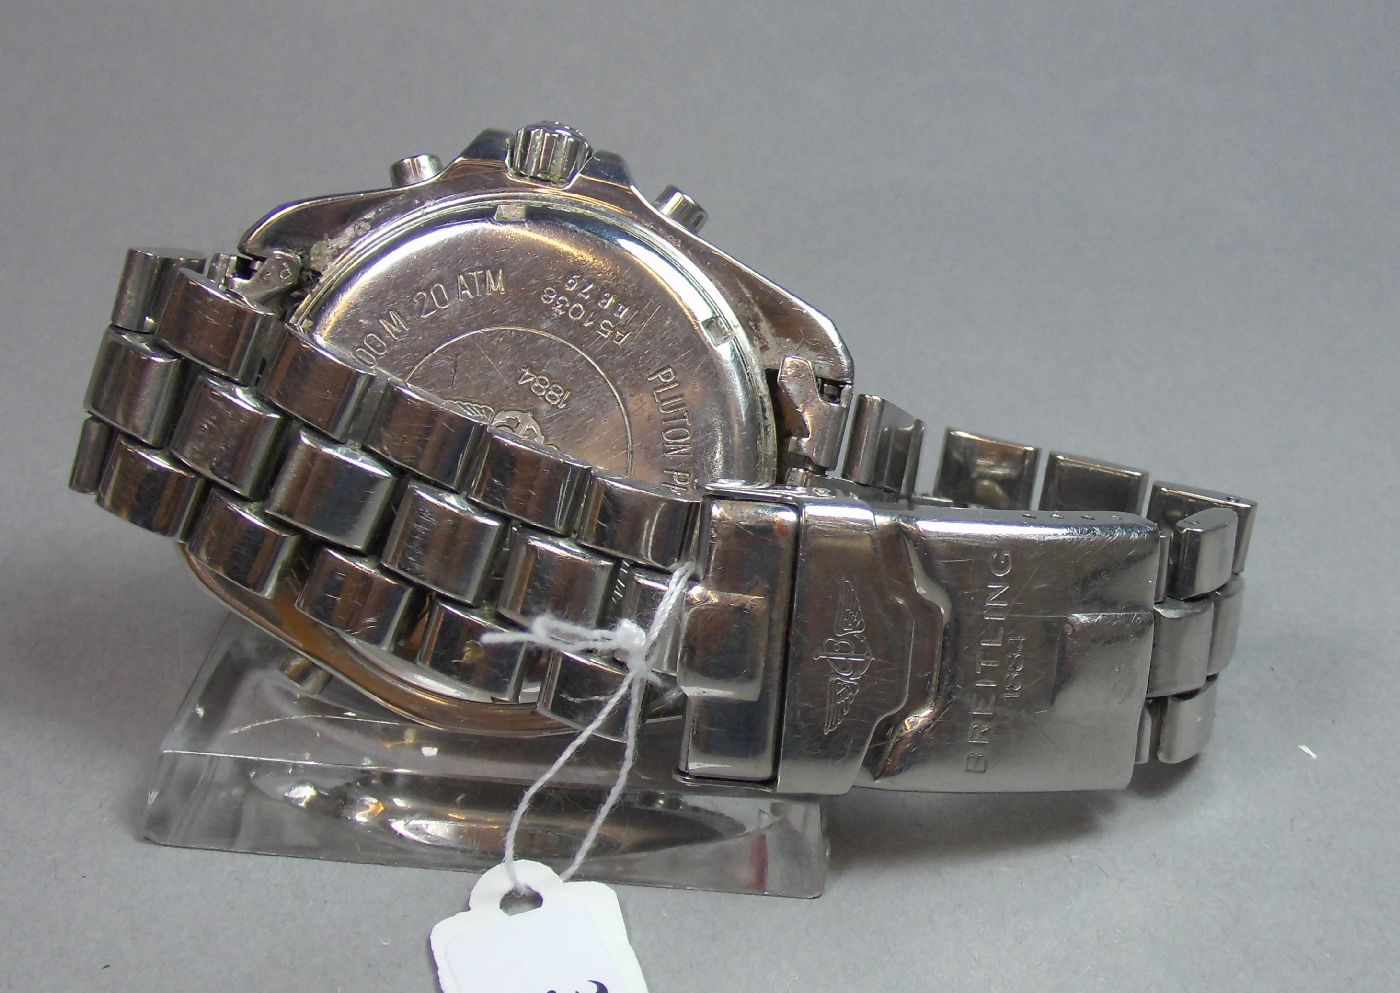 BREITLING "PLUTON" ARMBANDUHR / wristwatch, Quarz-Uhr, Schweiz. Stahlgehäuse mit drehbarer - Image 8 of 9